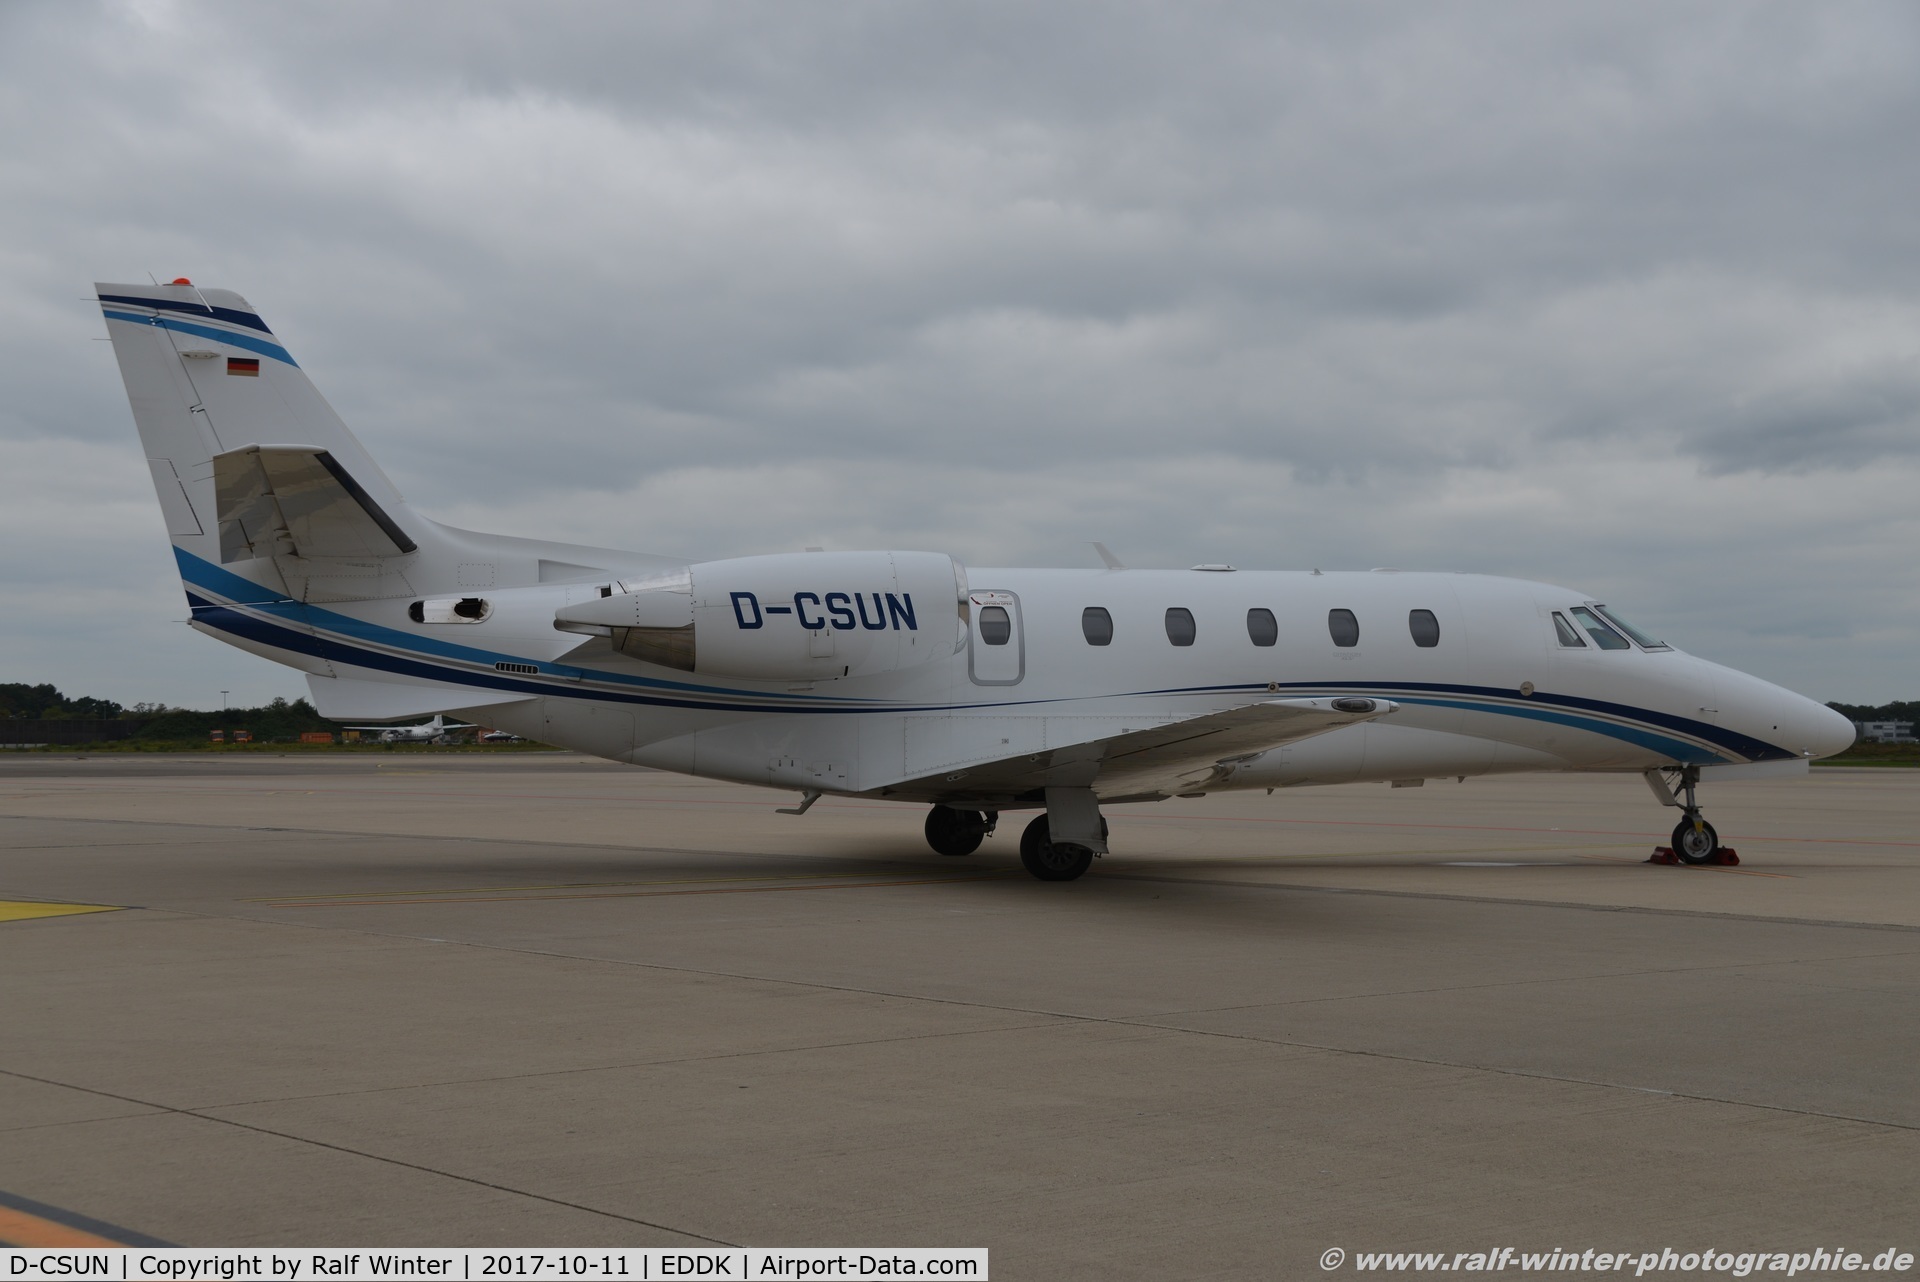 D-CSUN, 2012 Cessna 560 Citation XLS+ C/N 560-6102, Cessna 560XL Citation XLS+ - AHO Air Hamburg Private Jets - 560-6102 - D-CSUN - 11.10.2017 - CGN